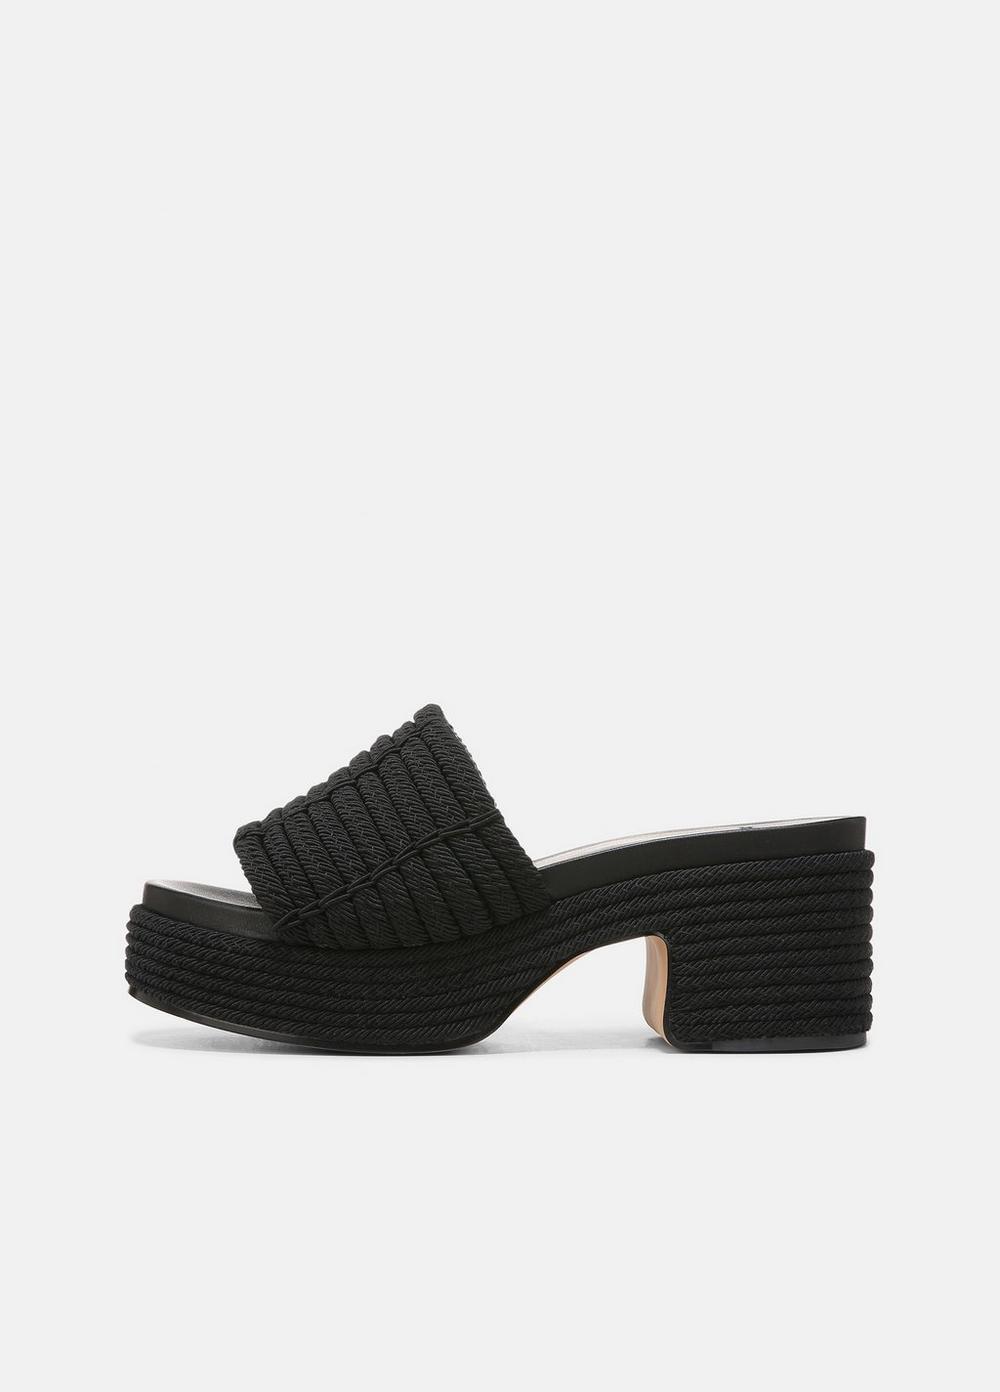 Vince Margo Cord Platform Sandal, Black, Size 9 Vince